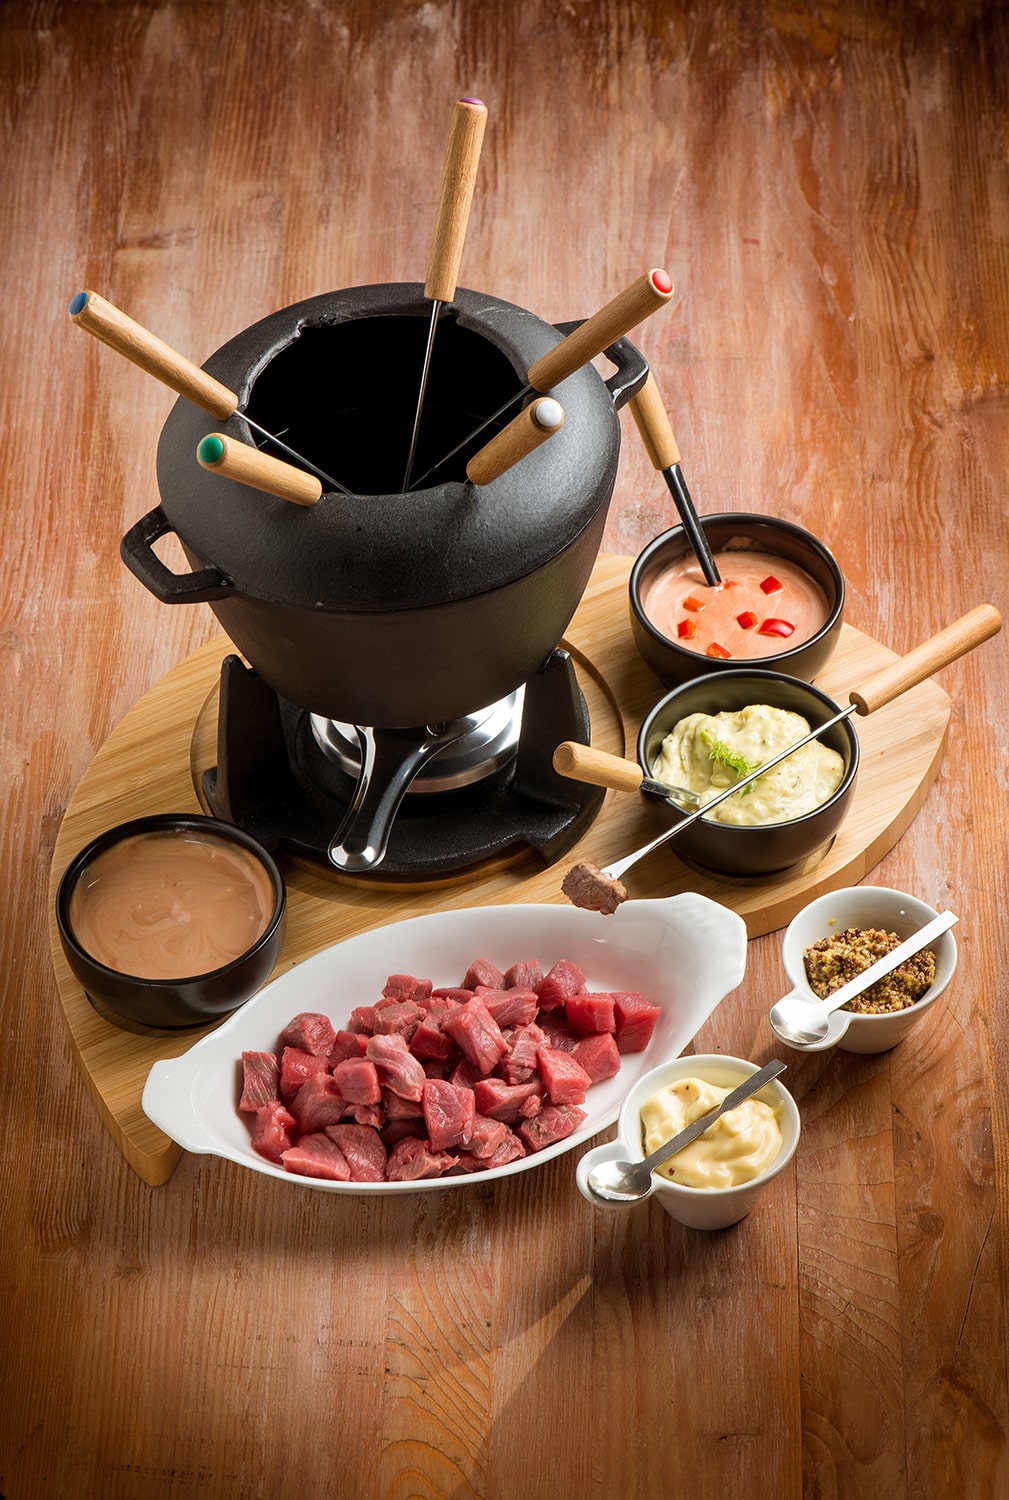 La fondue bourguignonne: una magia gourmet, un rito ancestrale « Pane &  Focolare